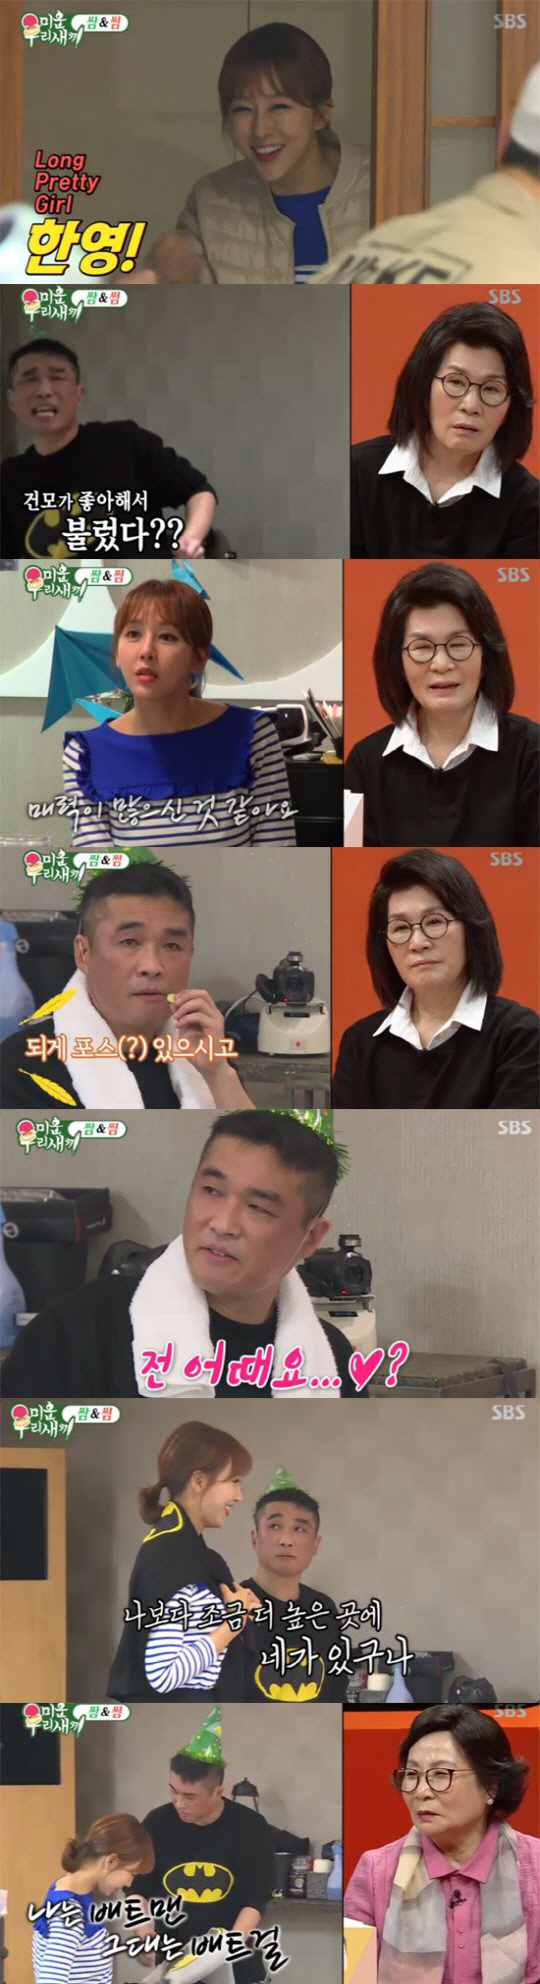 김건모-한영, 20cm 차이나는 이 커플 ‘썸 후보에 있을까?’